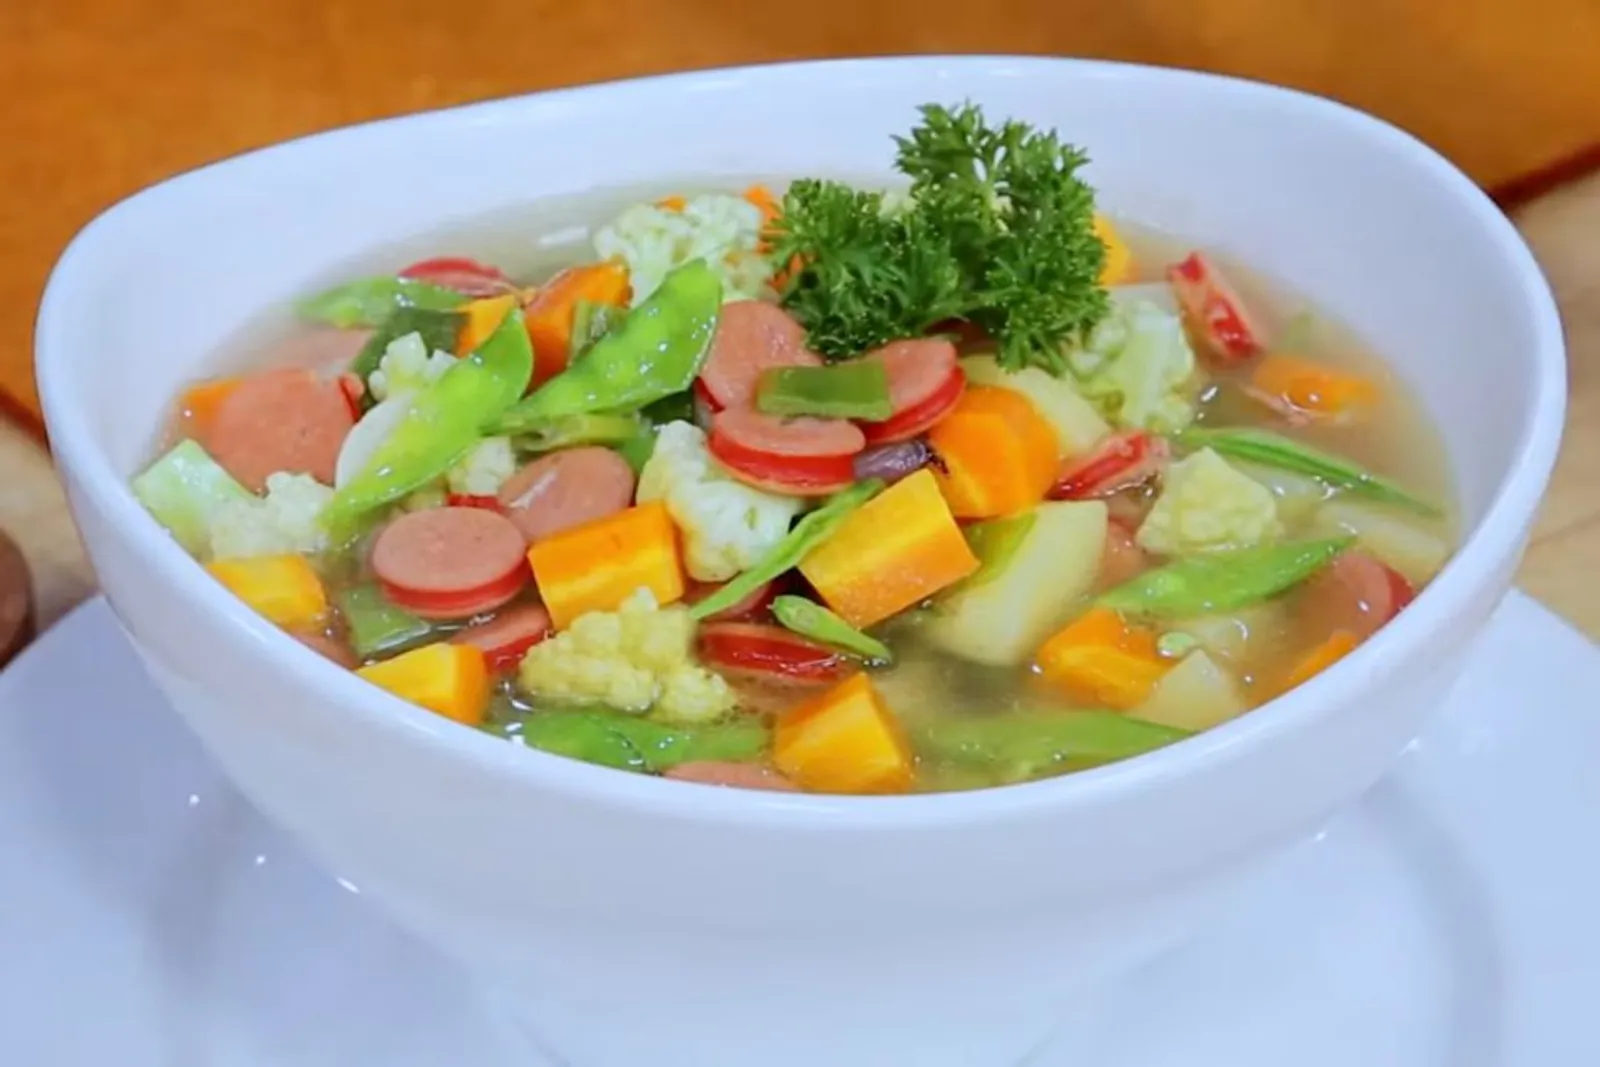 Resep Sayur Sup Bening, Menu Sehat Berkuah yang Menyegarkan